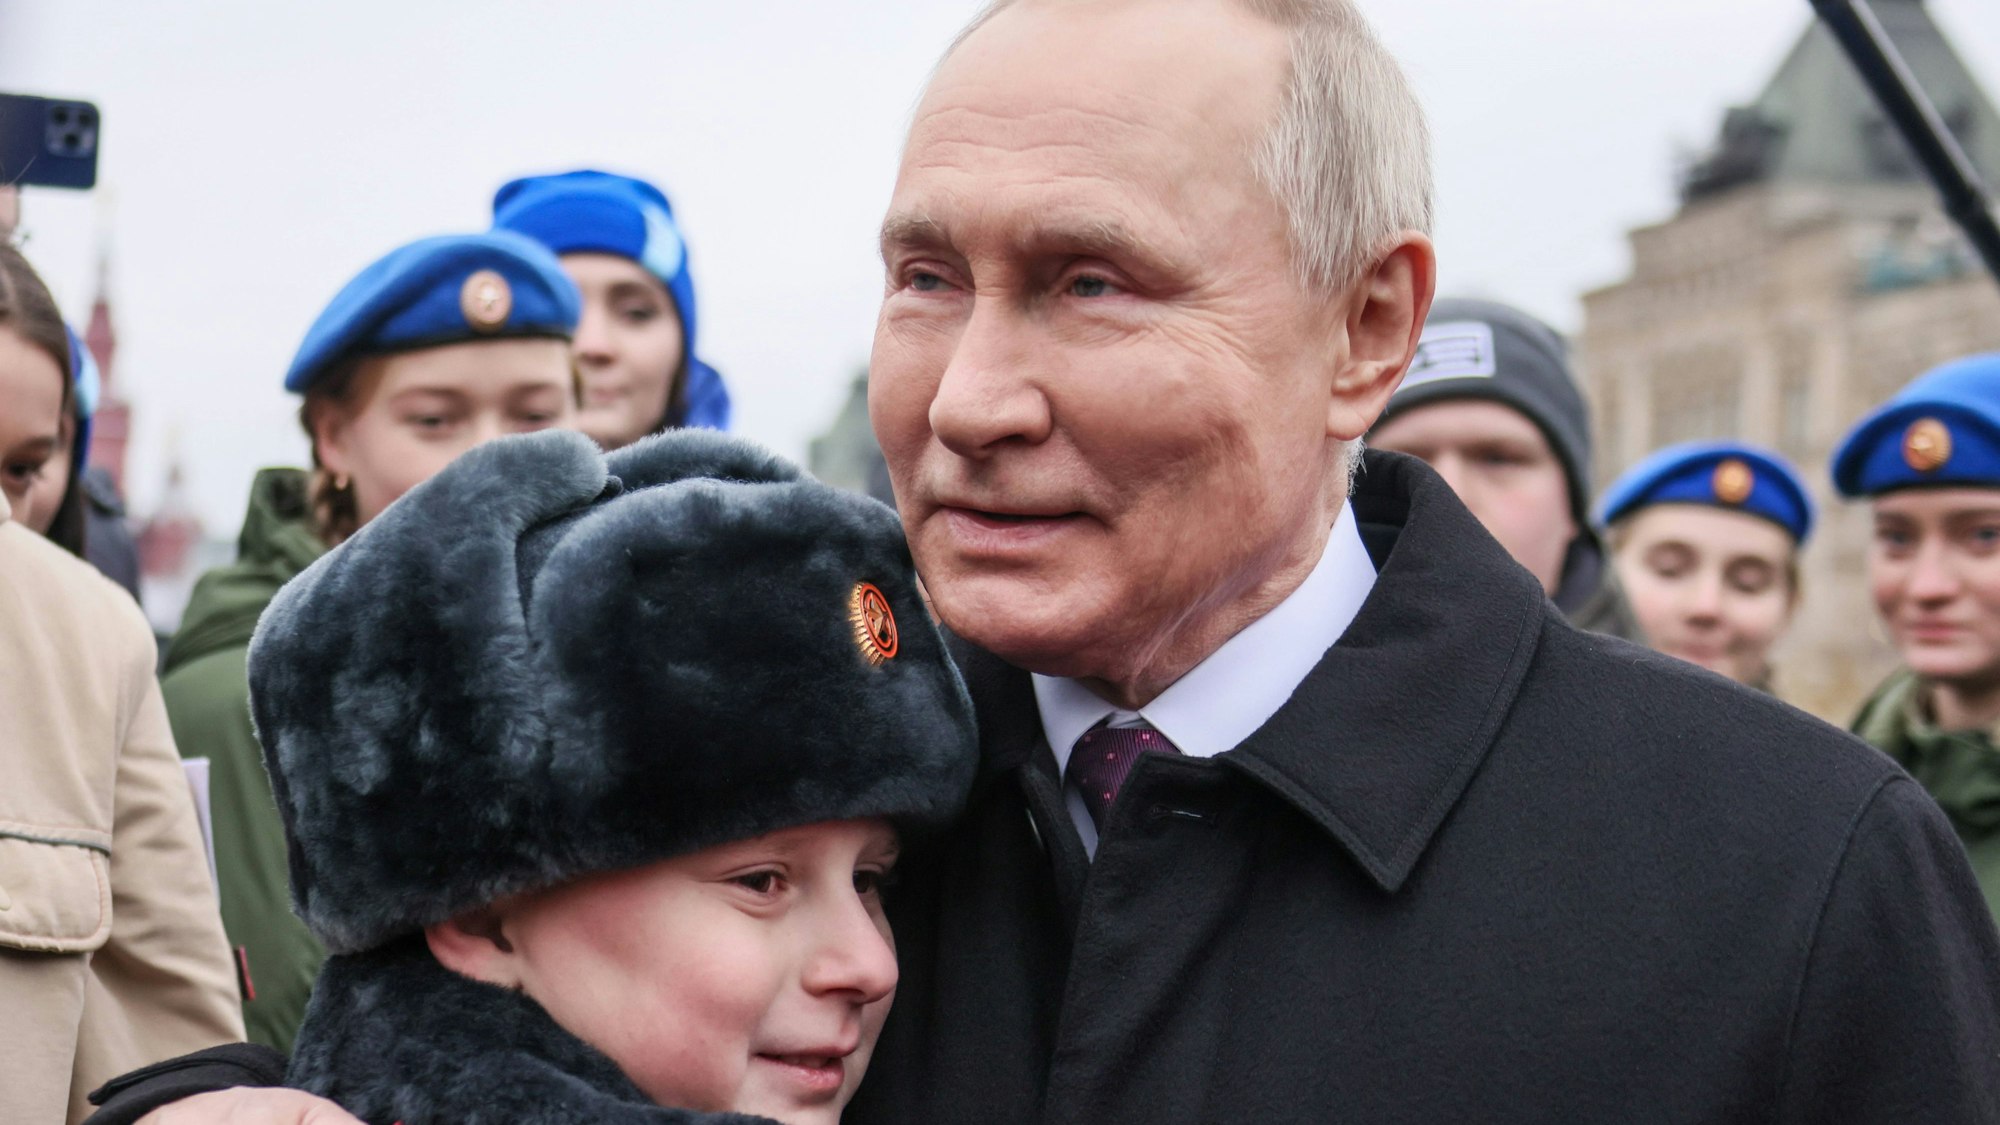 Wladimir Putin umarmt einen russischen Jungen, der ihm zuvor gesagt hatte, er wolle wie sein Vater sein. Laut Angaben des Jungen starb sein Vater beim Krieg gegen die Ukraine. Experten waren immer wieder vor einer Indoktrinierung der russischen Jugend.